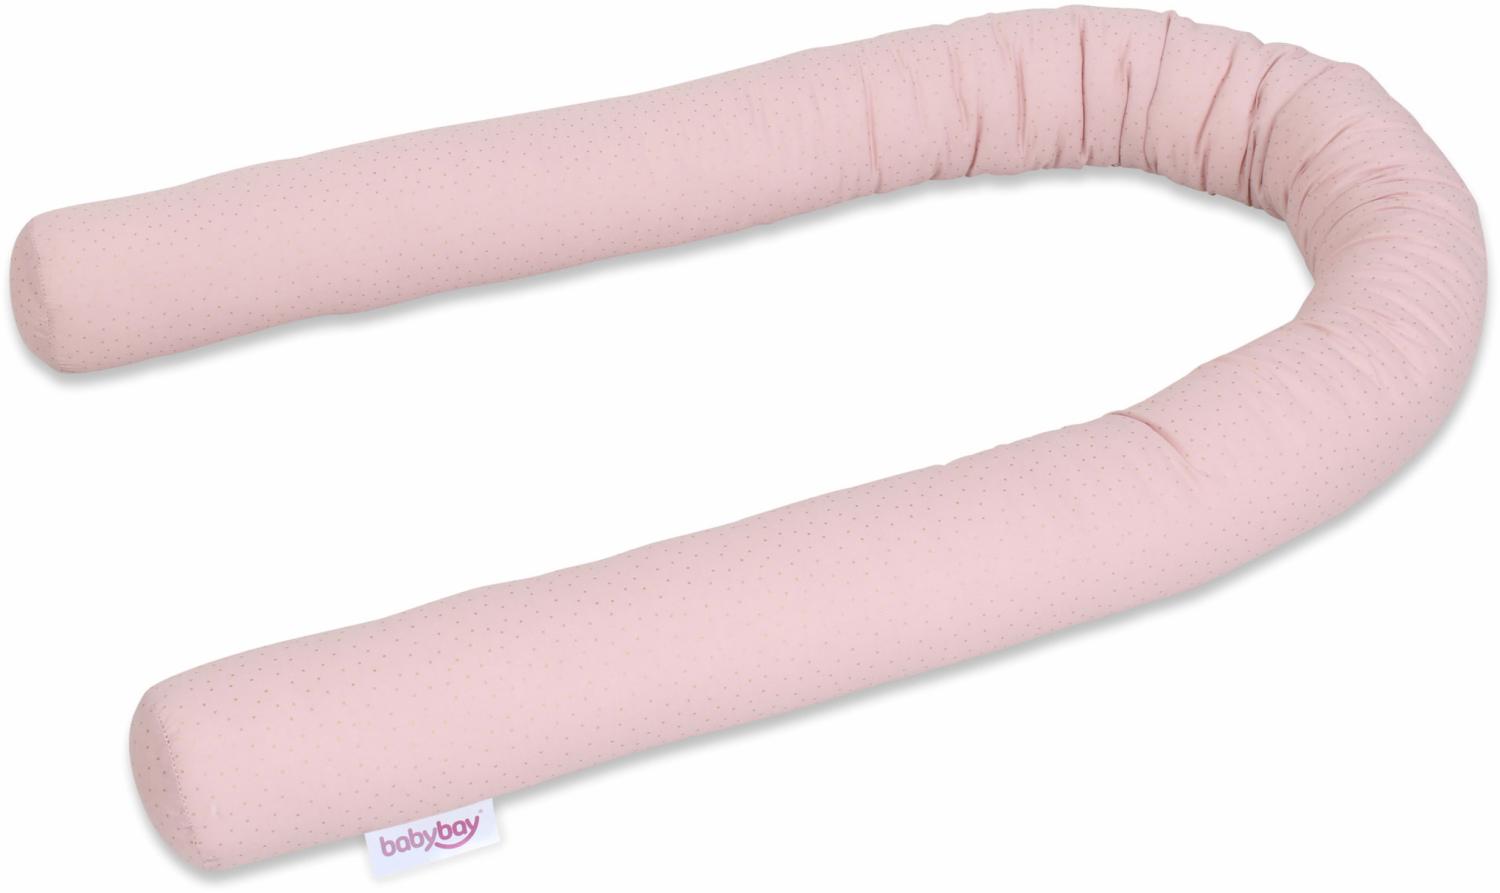 babybay Nestchenschlange Organic Cotton Royal passend für alle Modelle, rosé Glitzerpunkte gold Bild 1